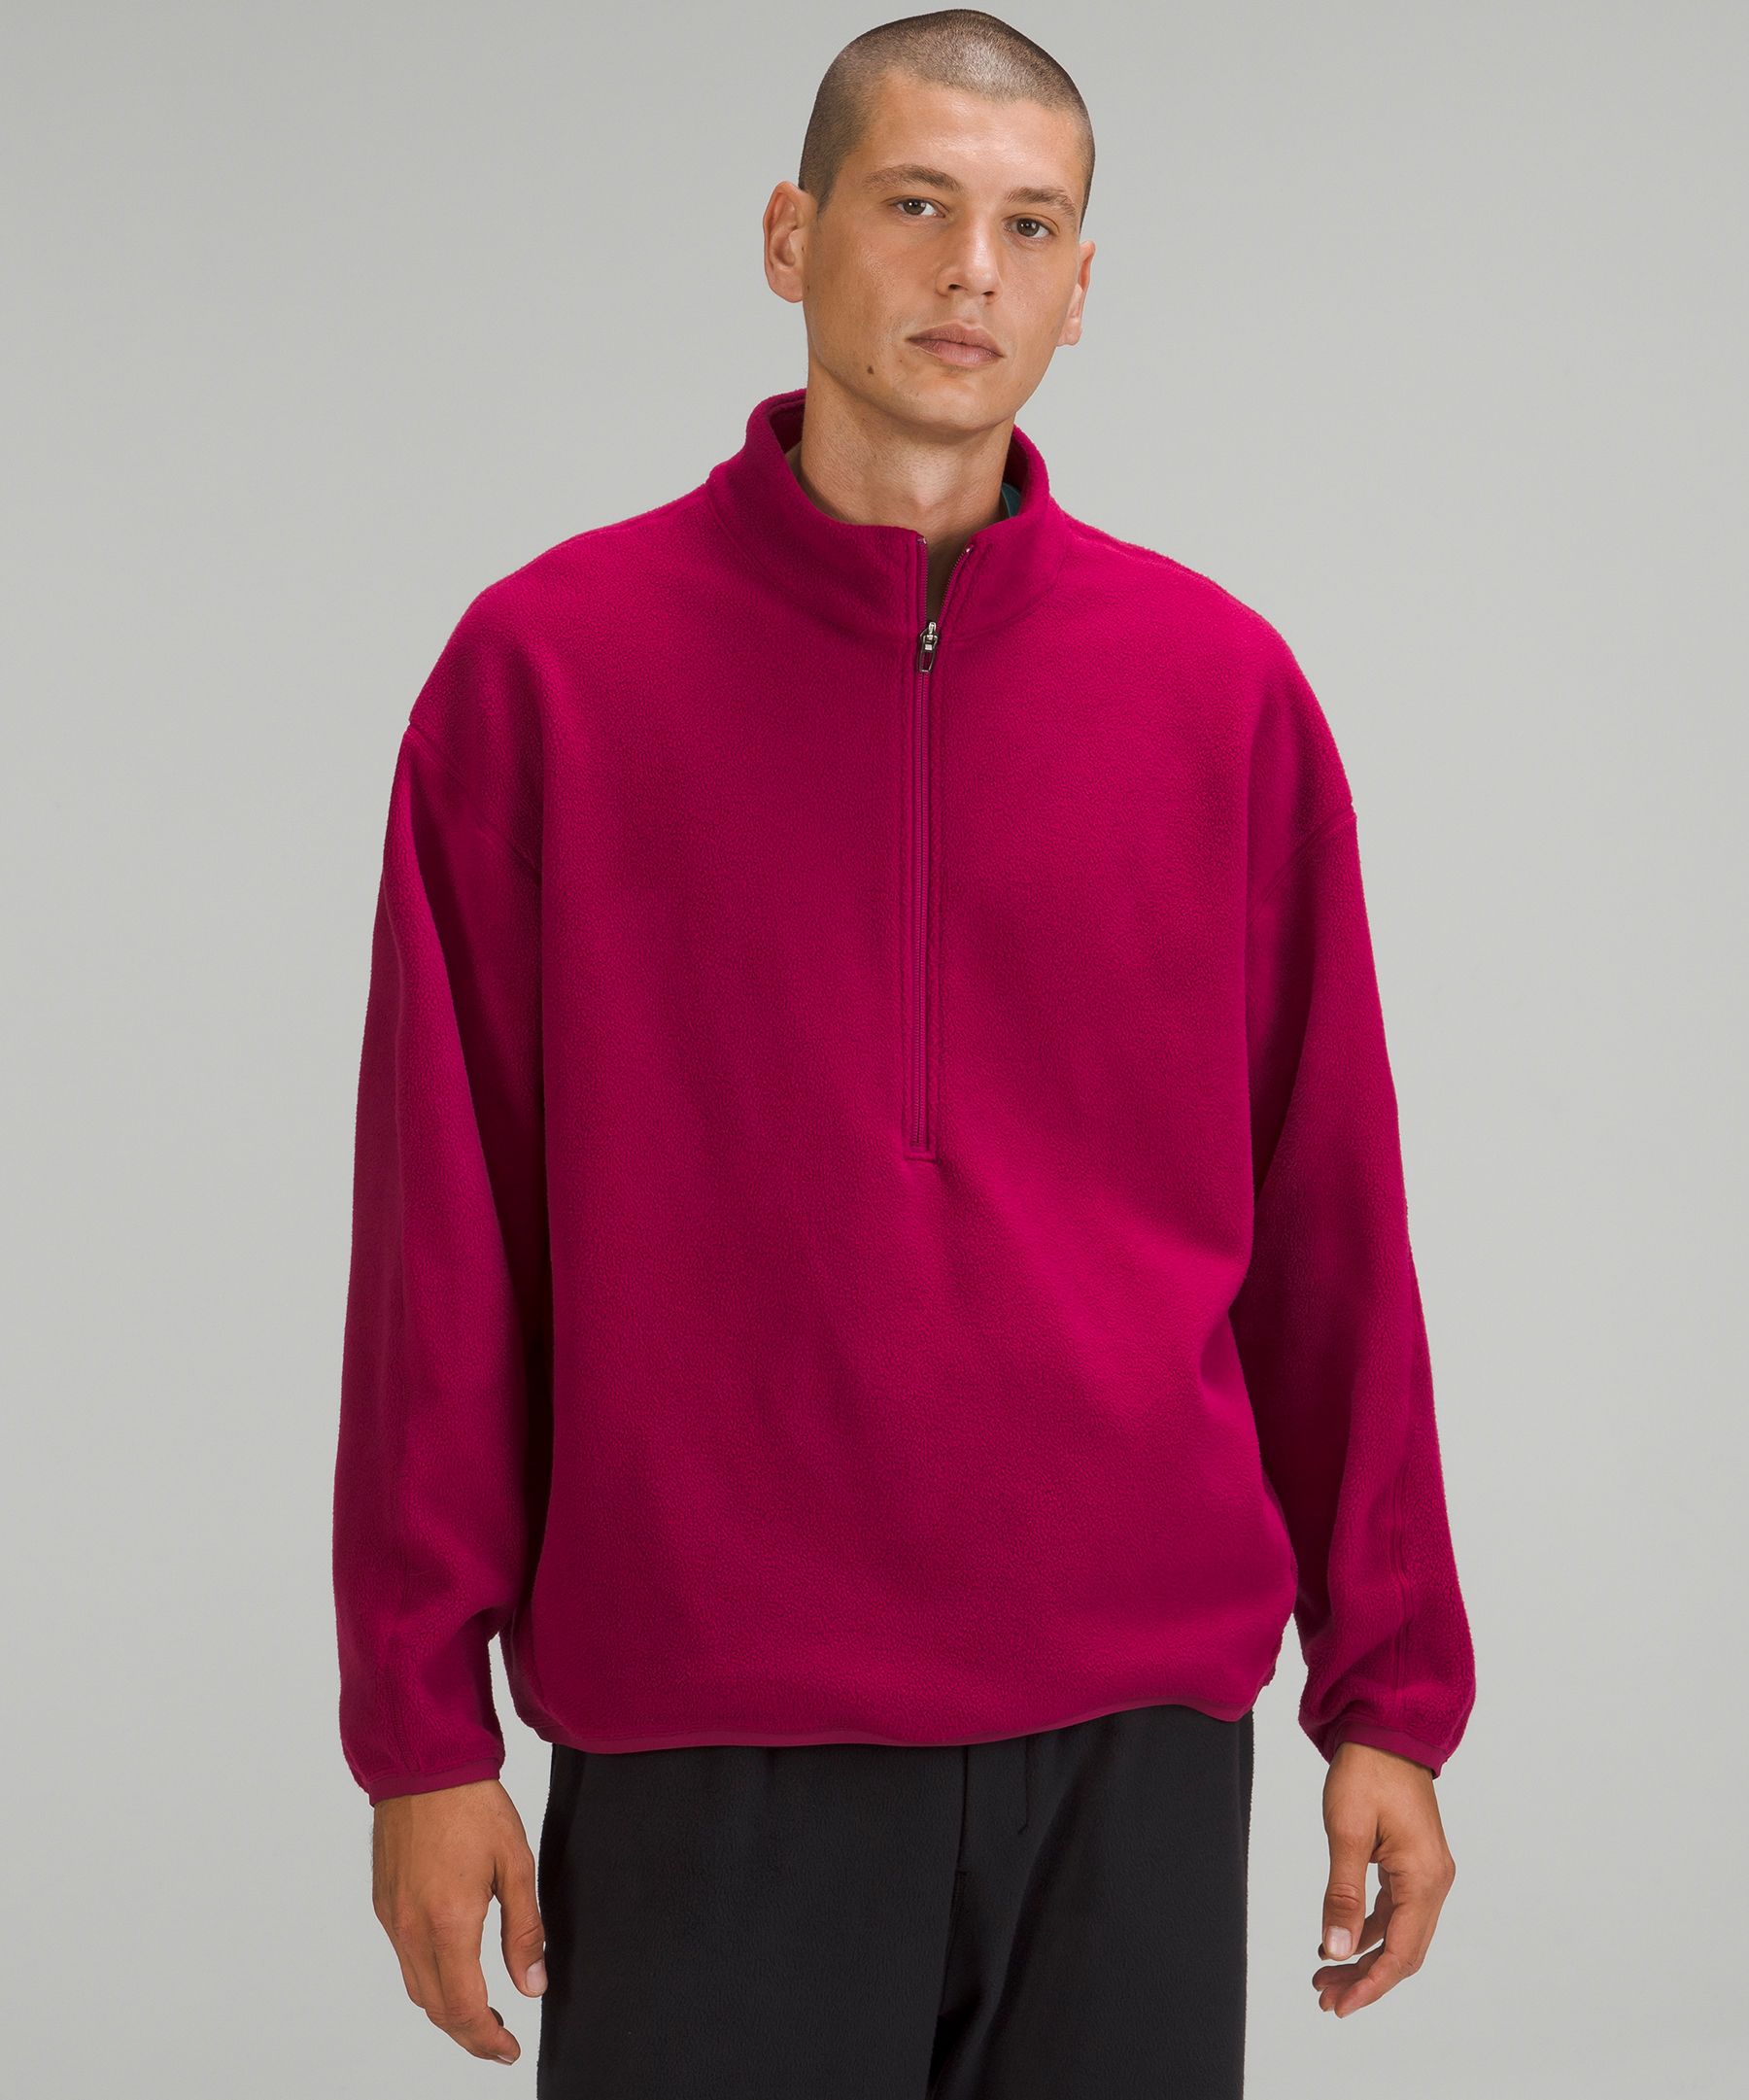 Oversized Fleece Half Zip, Men's Hoodies & Sweatshirts